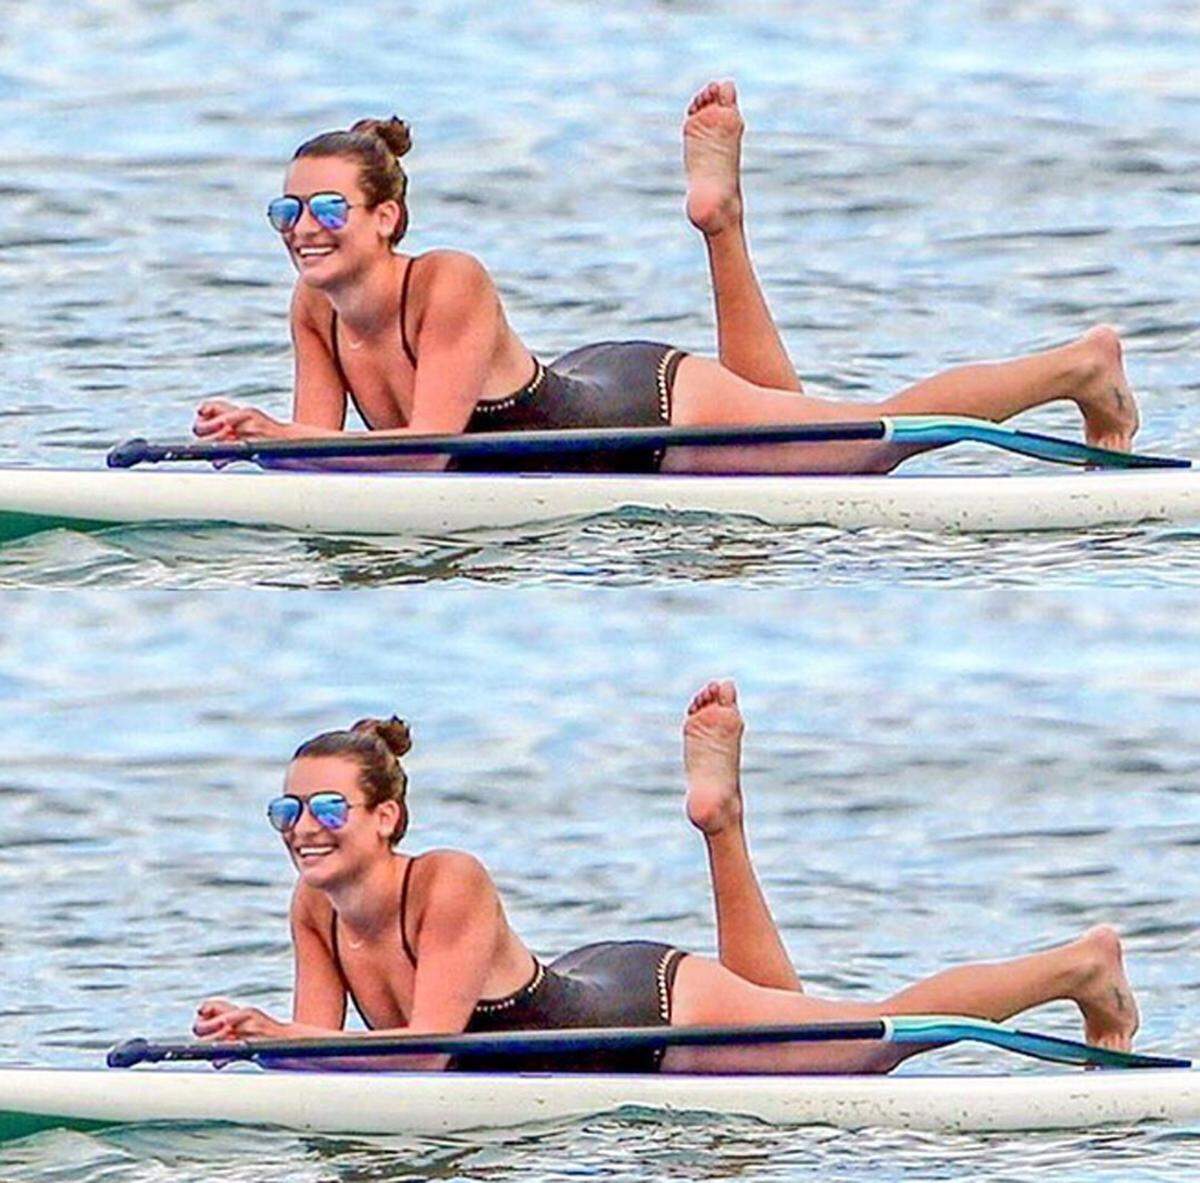 Schauspielerin Lea Michele sonnt sich auf dem Paddle Board.